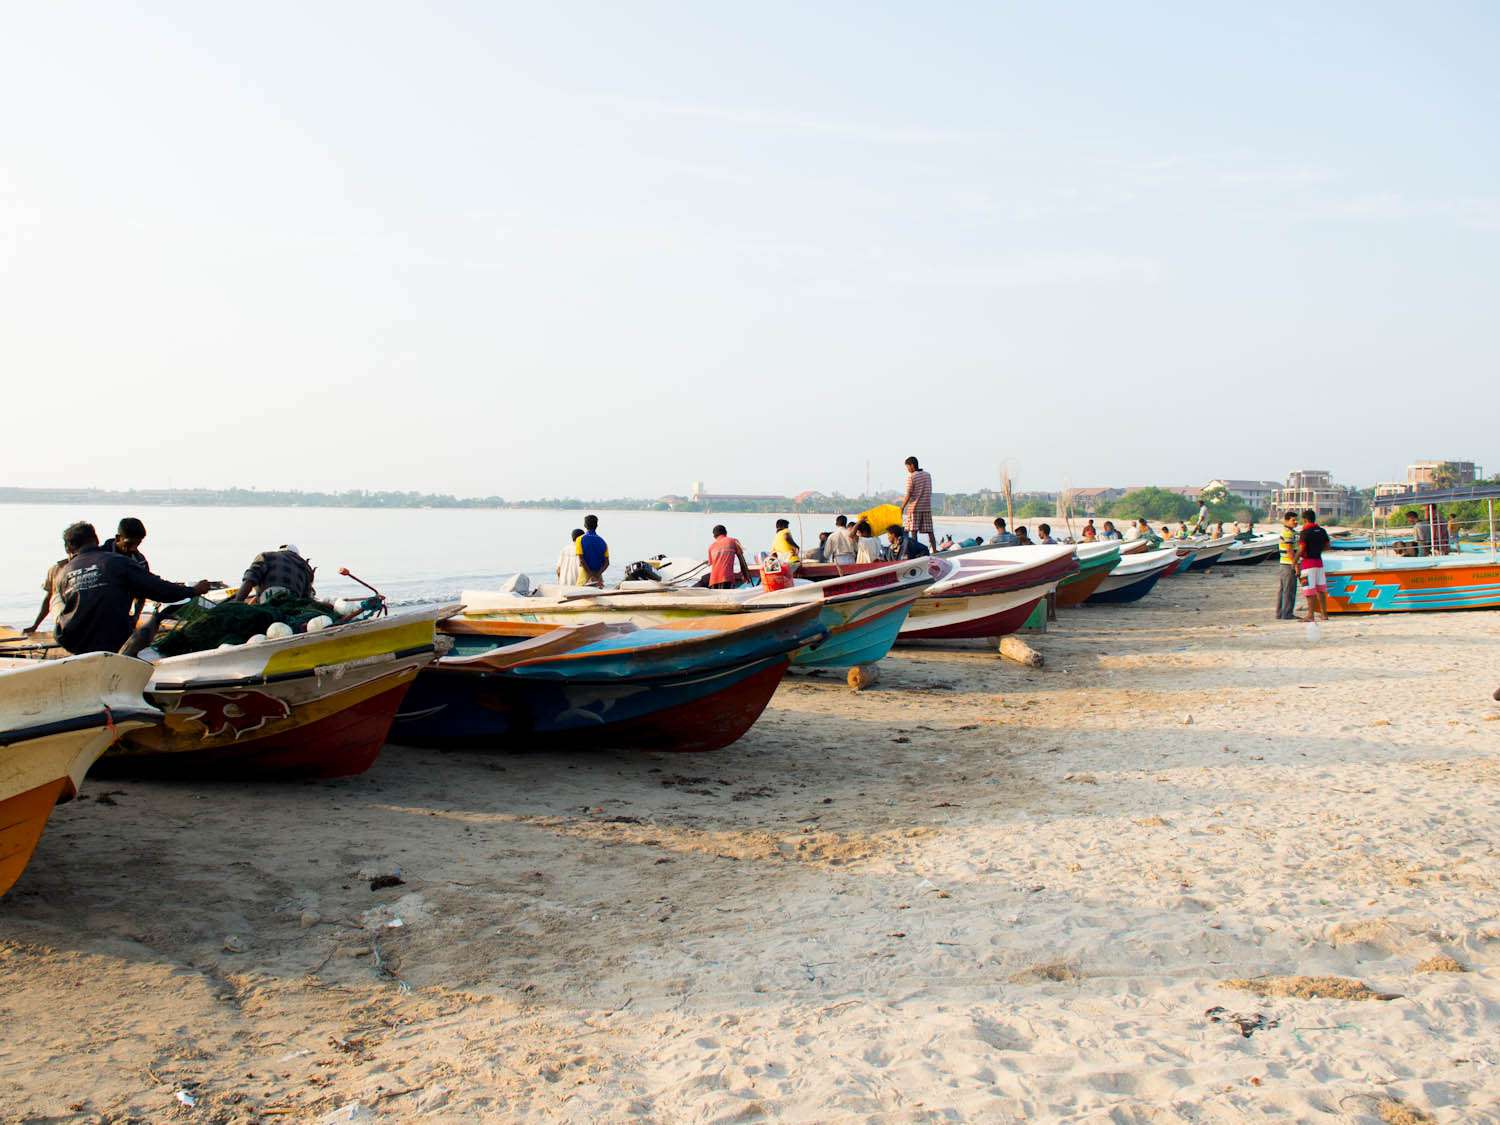 20140802——斯里兰卡,斯里兰卡-食物-钓鱼船——斯里兰卡,斯里兰卡tomky.jpg——拿俄米